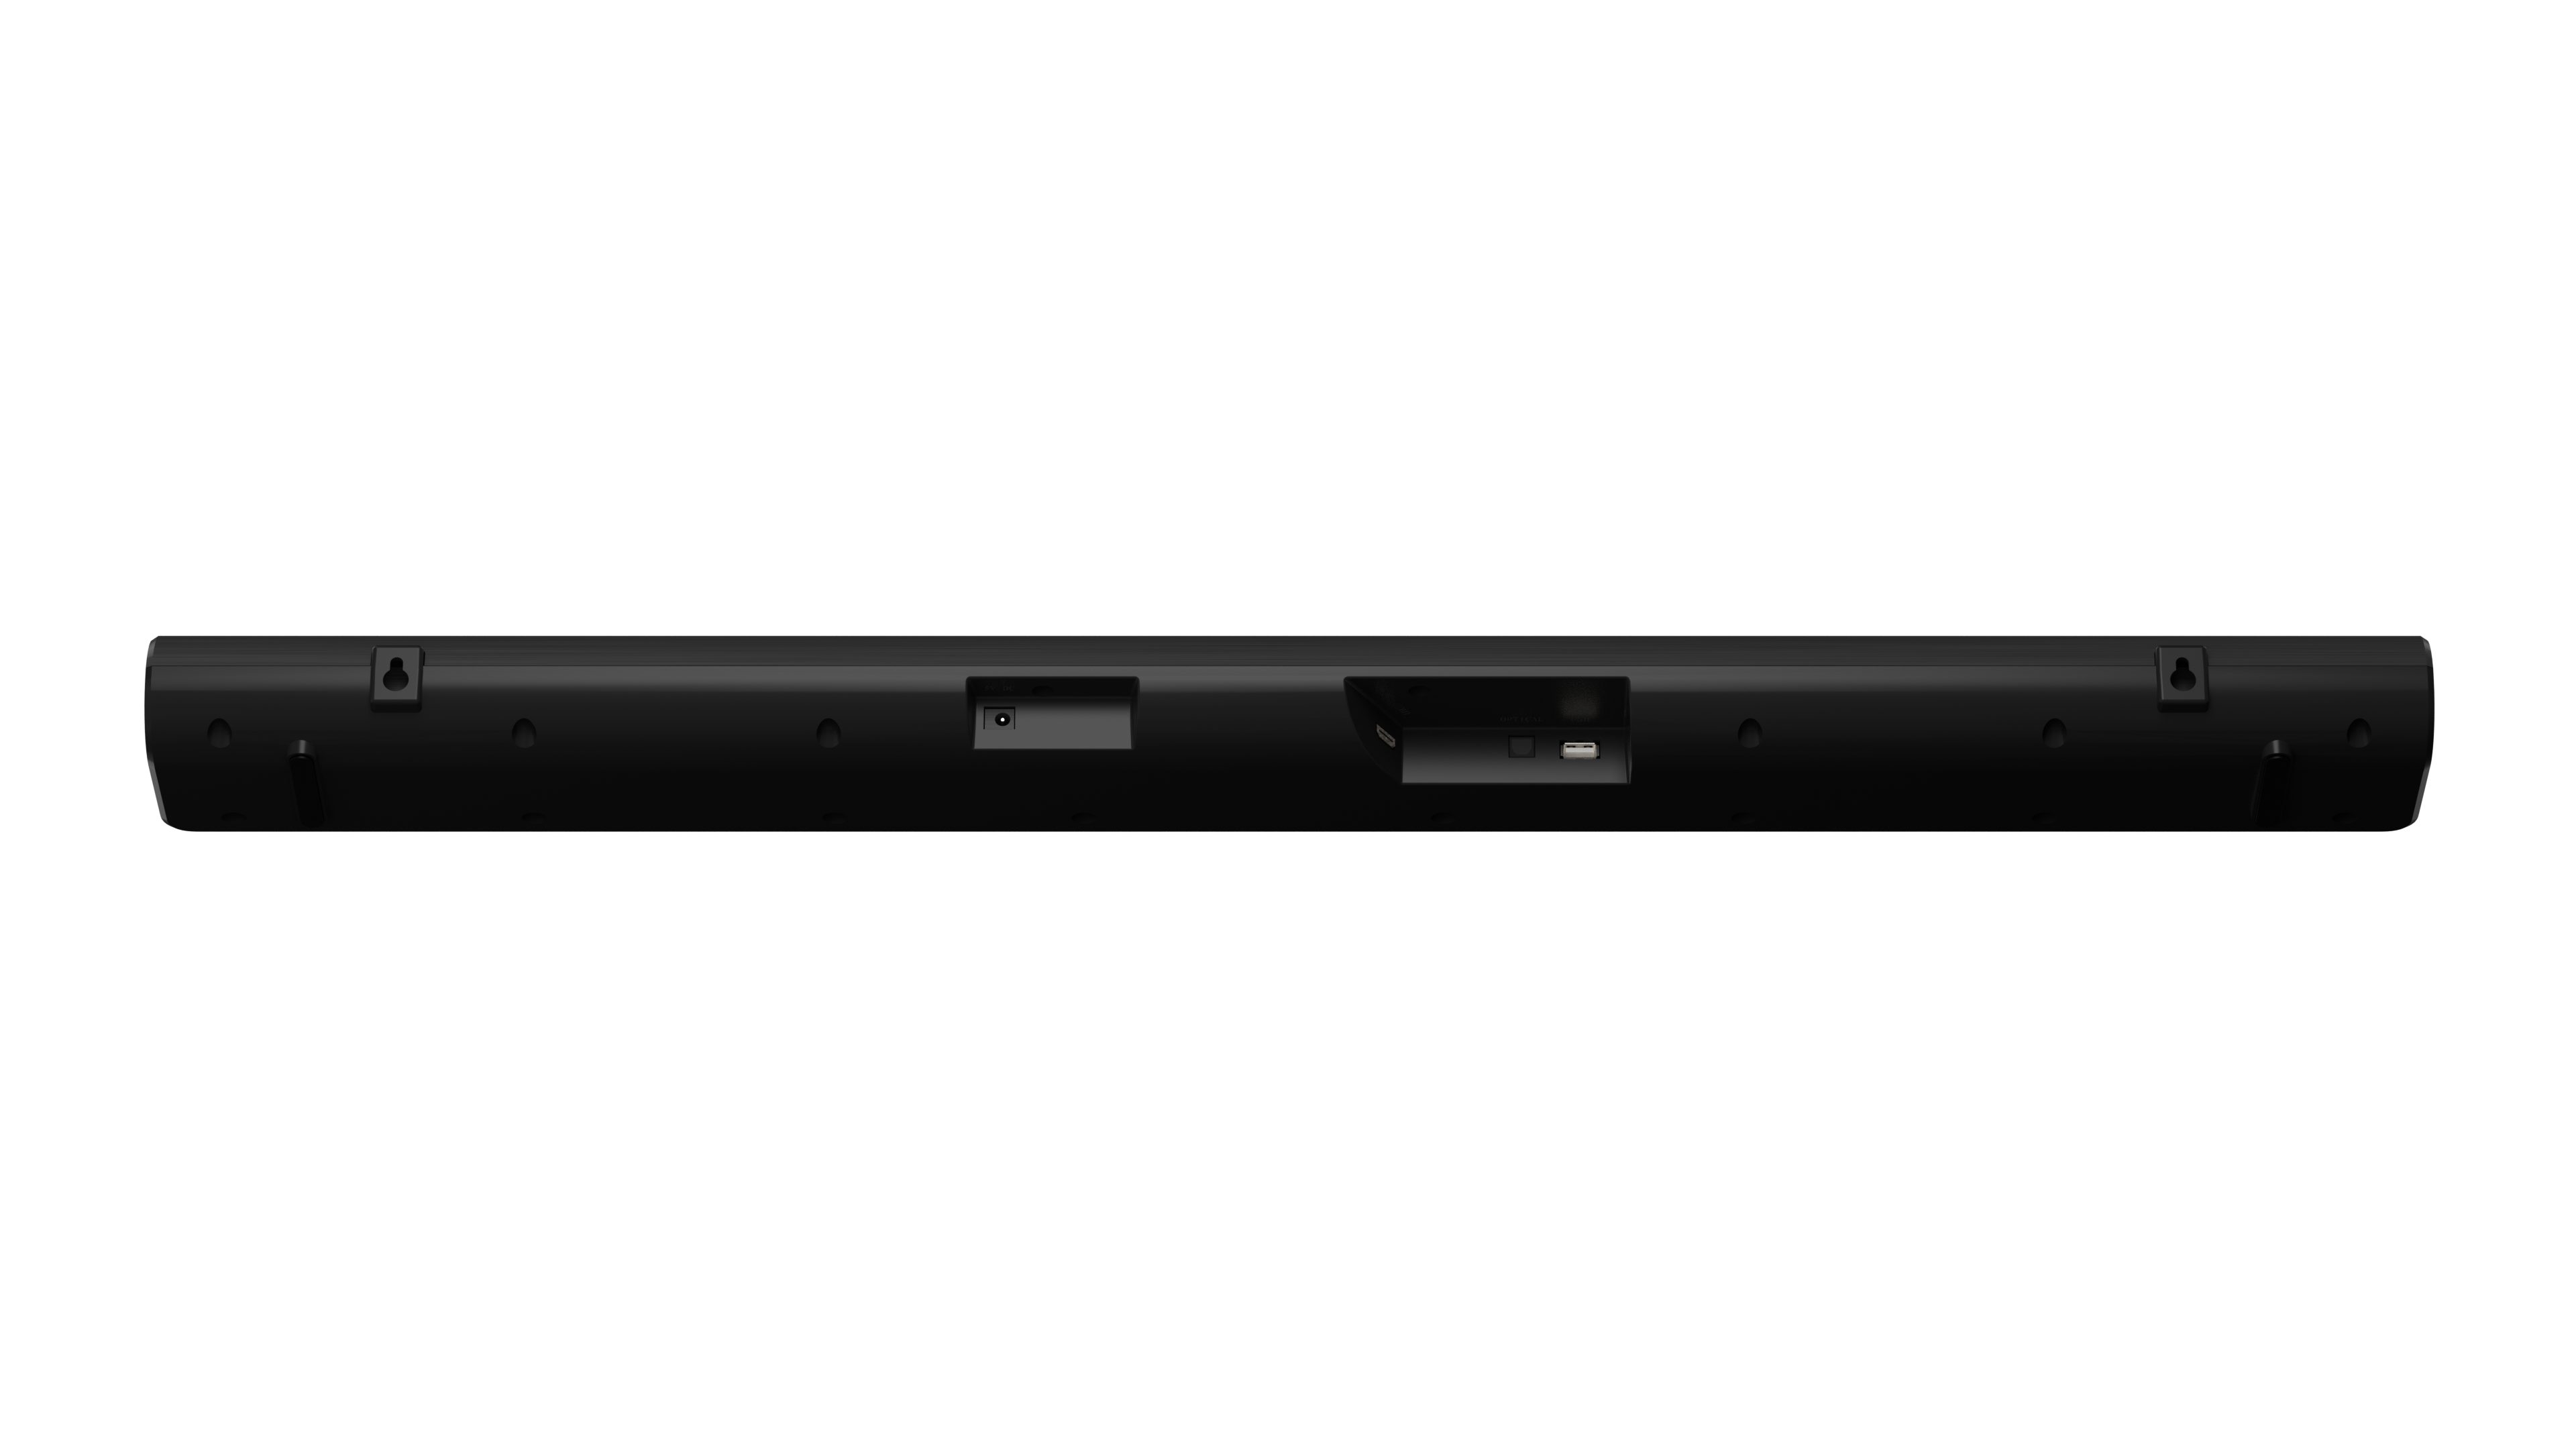 Hisense HS205G 2.0 Kanal Soundbar, 2.0 Watt, W) 120 schwarz 120 Soundbar (Bluetooth